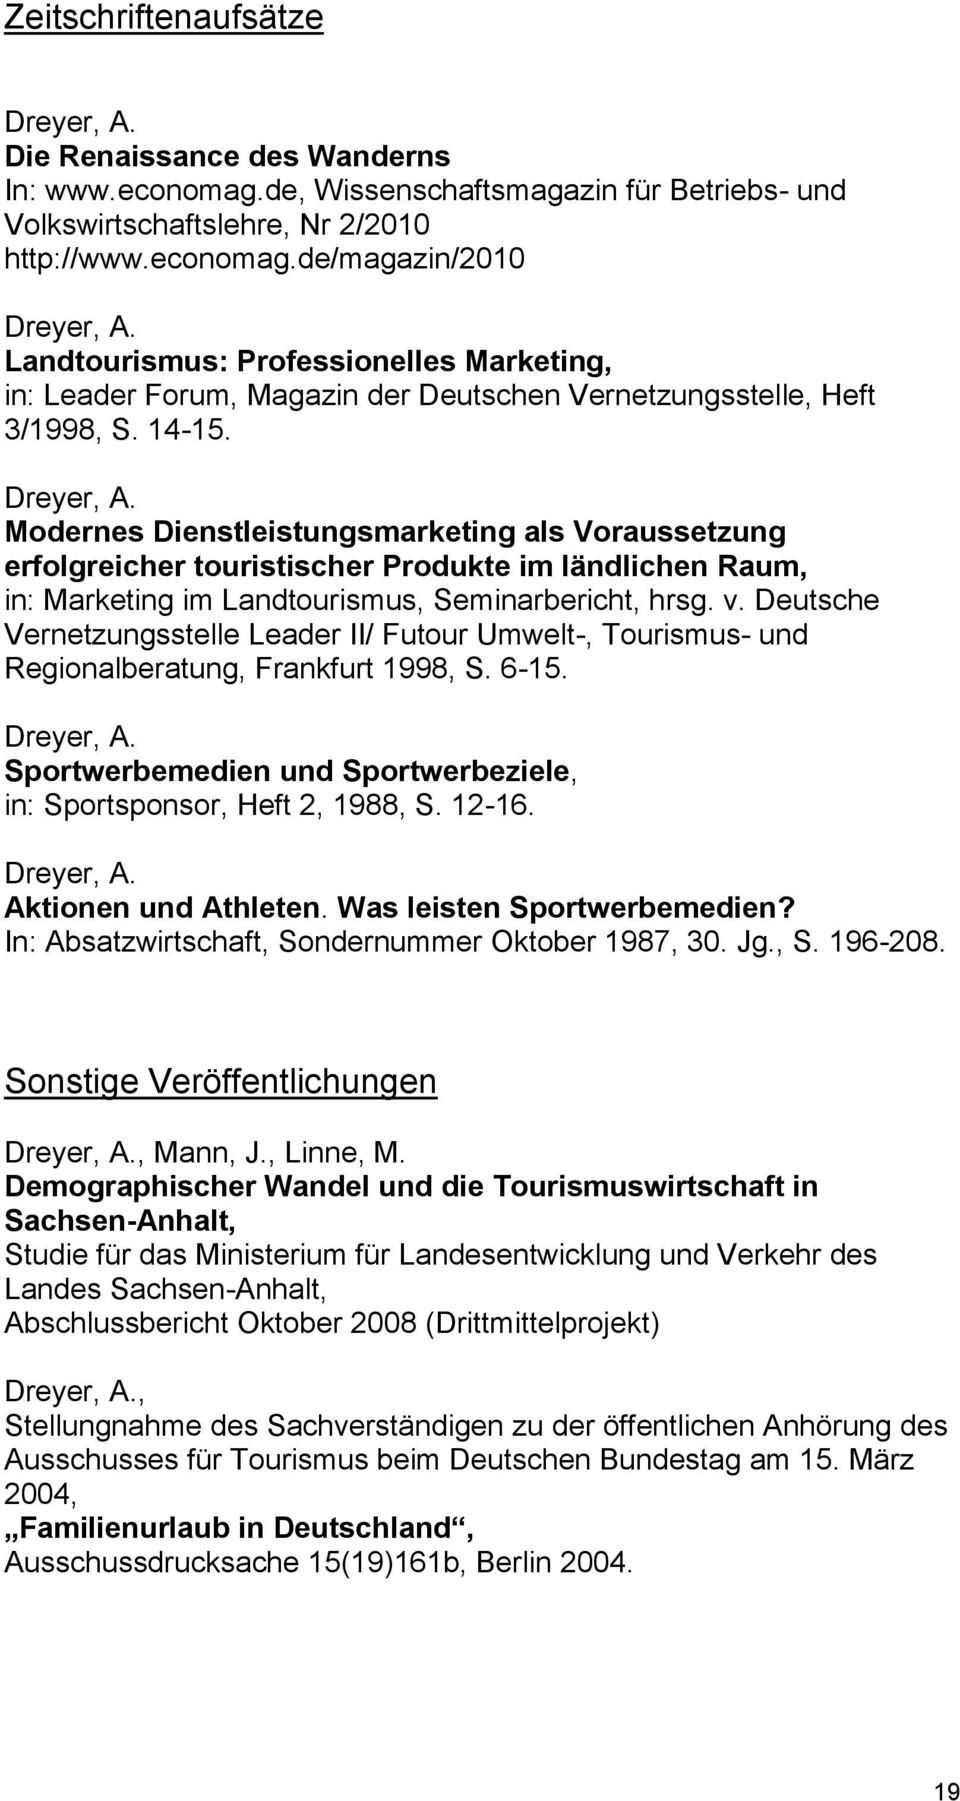 Deutsche Vernetzungsstelle Leader II/ Futour Umwelt-, Tourismus- und Regionalberatung, Frankfurt 1998, S. 6-15. Sportwerbemedien und Sportwerbeziele, in: Sportsponsor, Heft 2, 1988, S. 12-16.